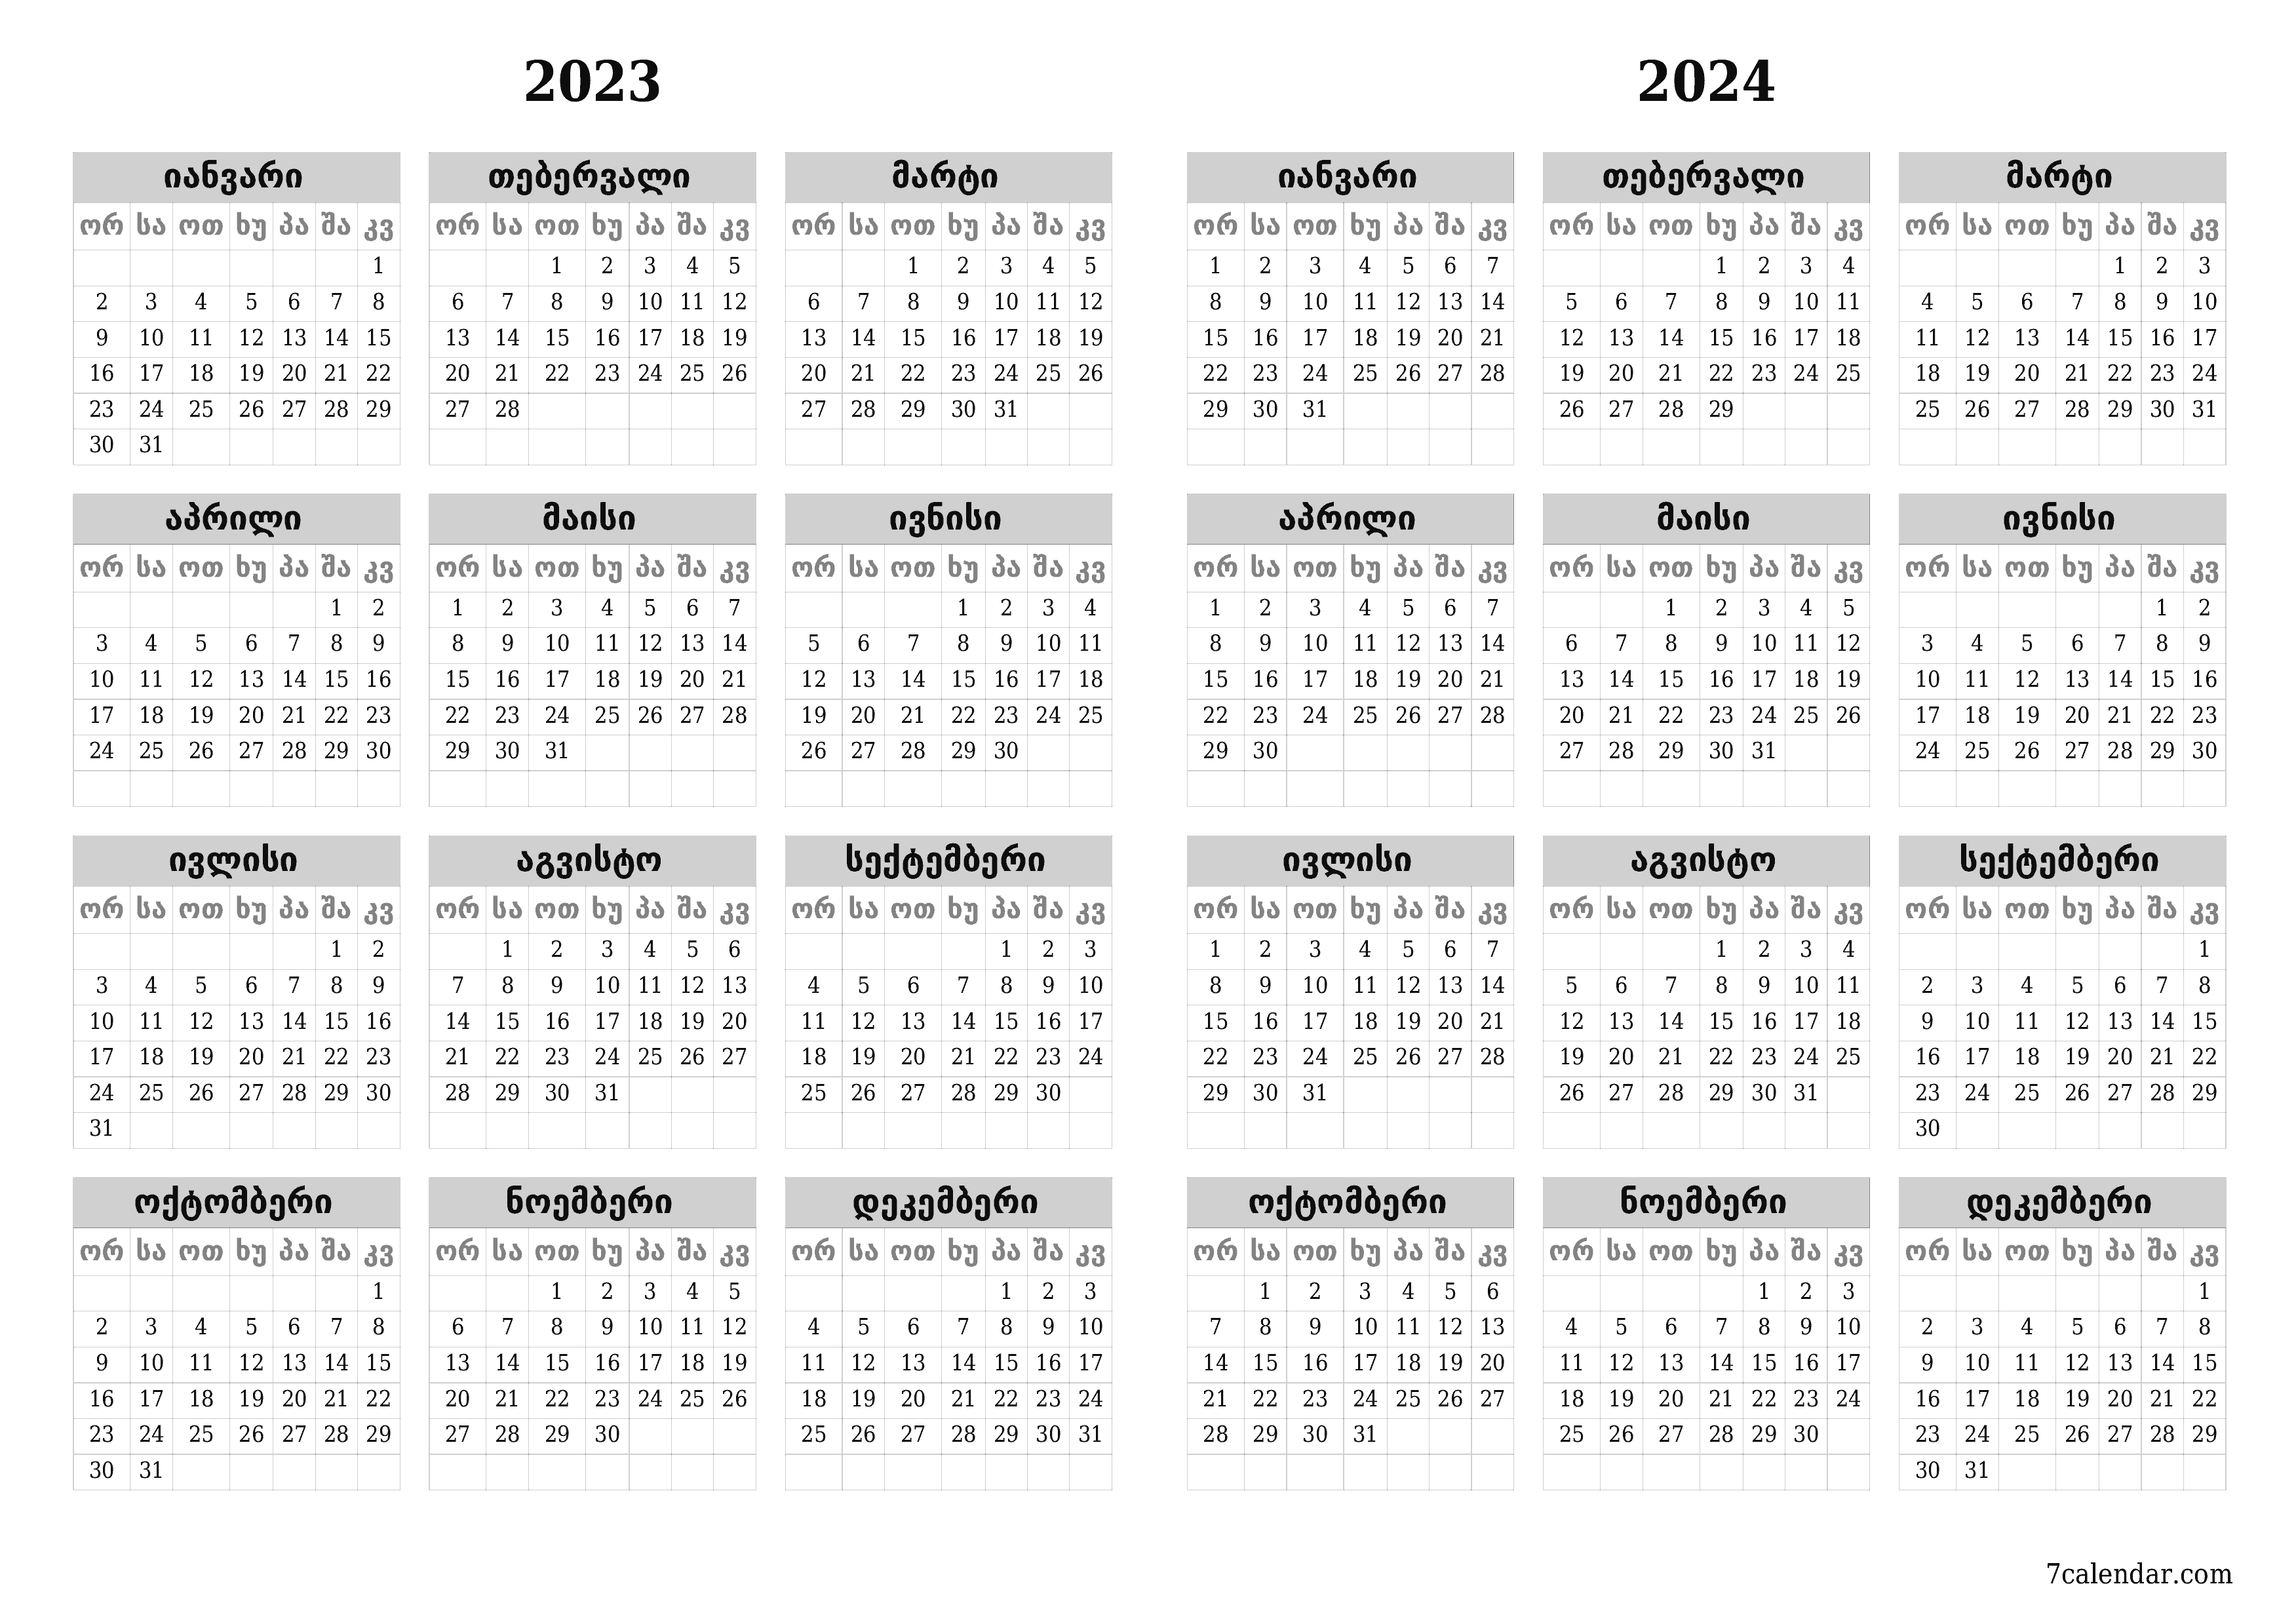 დასაბეჭდი კედლის კალენდრის შაბლონი უფასო ჰორიზონტალური ყოველწლიურად კალენდარი იანვარი (იან) 2023